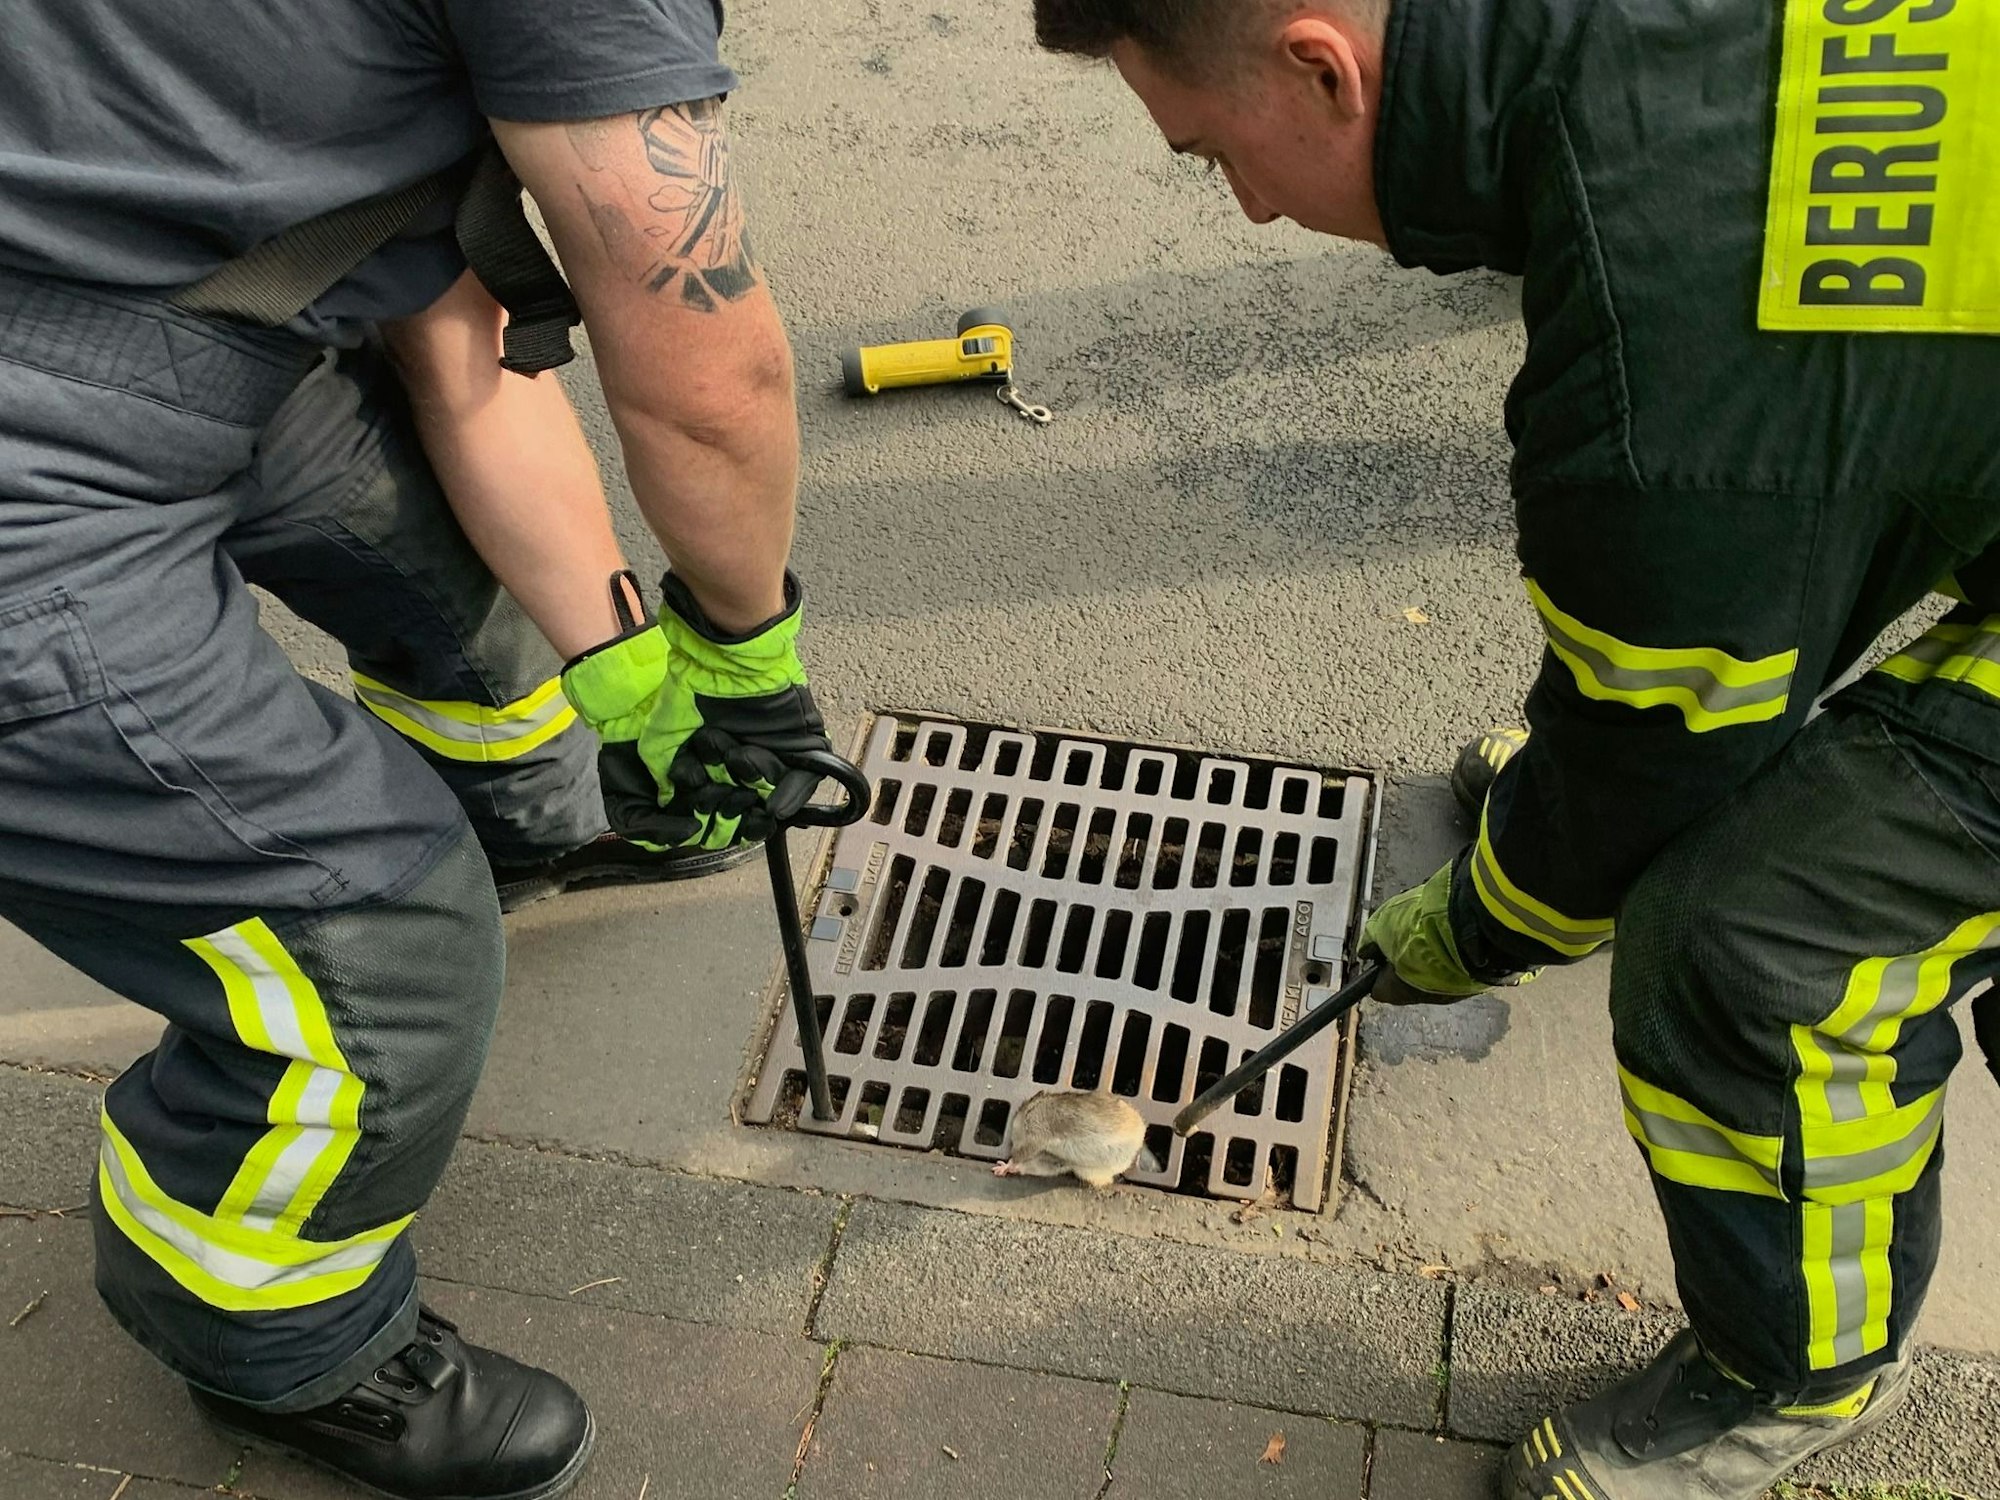 Zwei Feuerwehrmänner heben mit Stangen einen Gullydeckel an, in dem eine Ratte feststeckt.